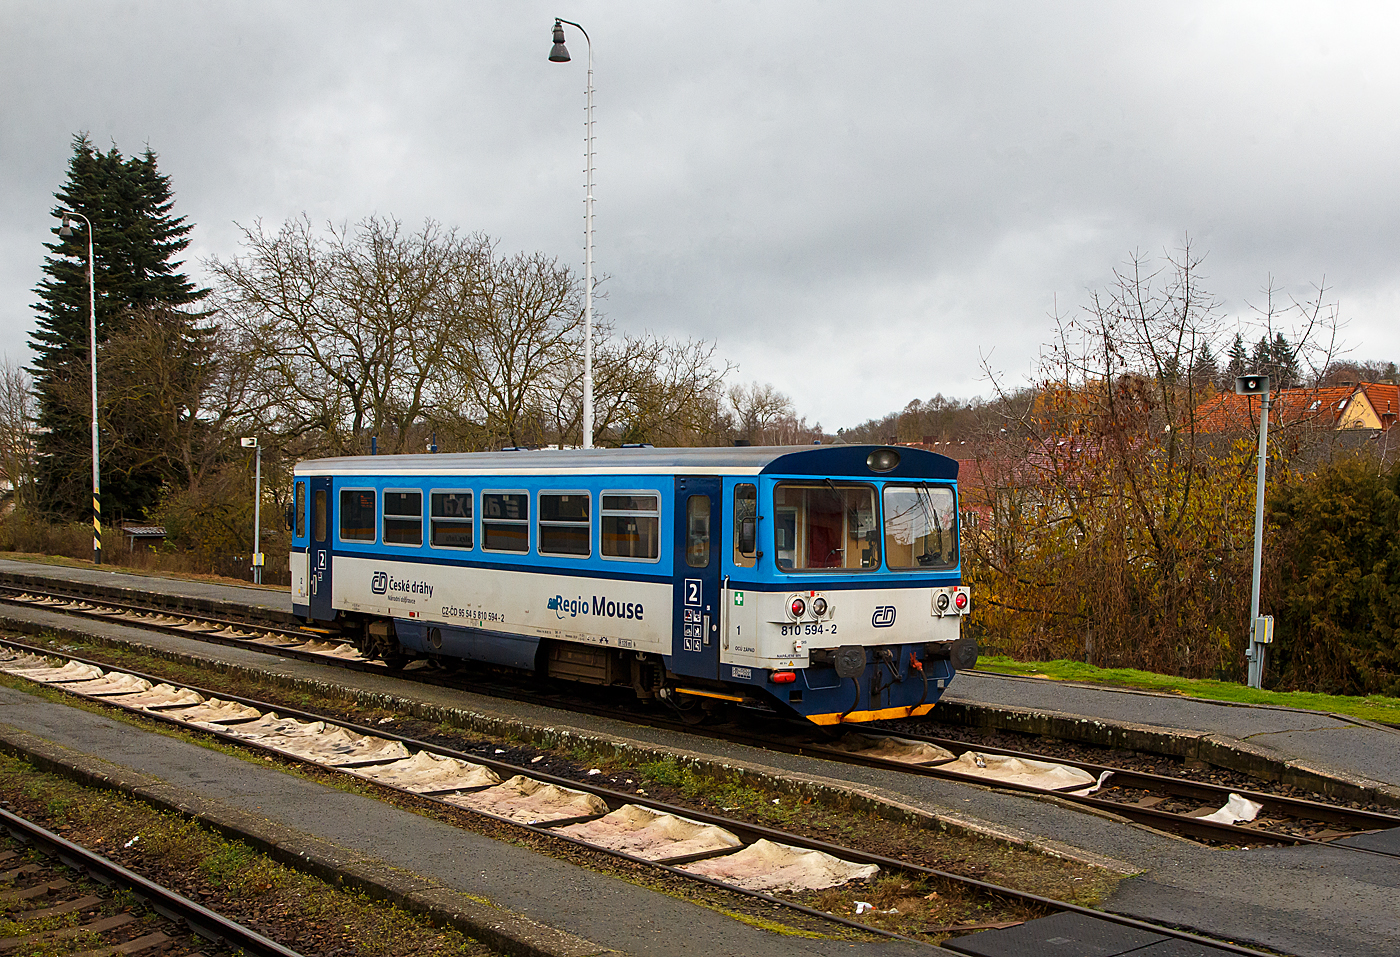 Die zur „RegioMouse“ modernisierte “Chcípák”  (Brotbüchse), der zweiachsige Dieseltriebwagen ČD 810 594-2 (CZ-ČD 95 54 5 810 594-2), ex ČSD M 152.0594, steht am 24.11.2022 als Regionalbahn im Bahnhof Domažlice (Taus) zur Abfahrt bereit.

Der Dieseltriebwagen wurde 1982 von Vagónka Studénka für die damalige ČSD Československé státní dráhy (Tschechoslowakischen Staatsbahnen gebaut. Das Upgrade zur ČD  Regio Mous erfolgte 2019.
